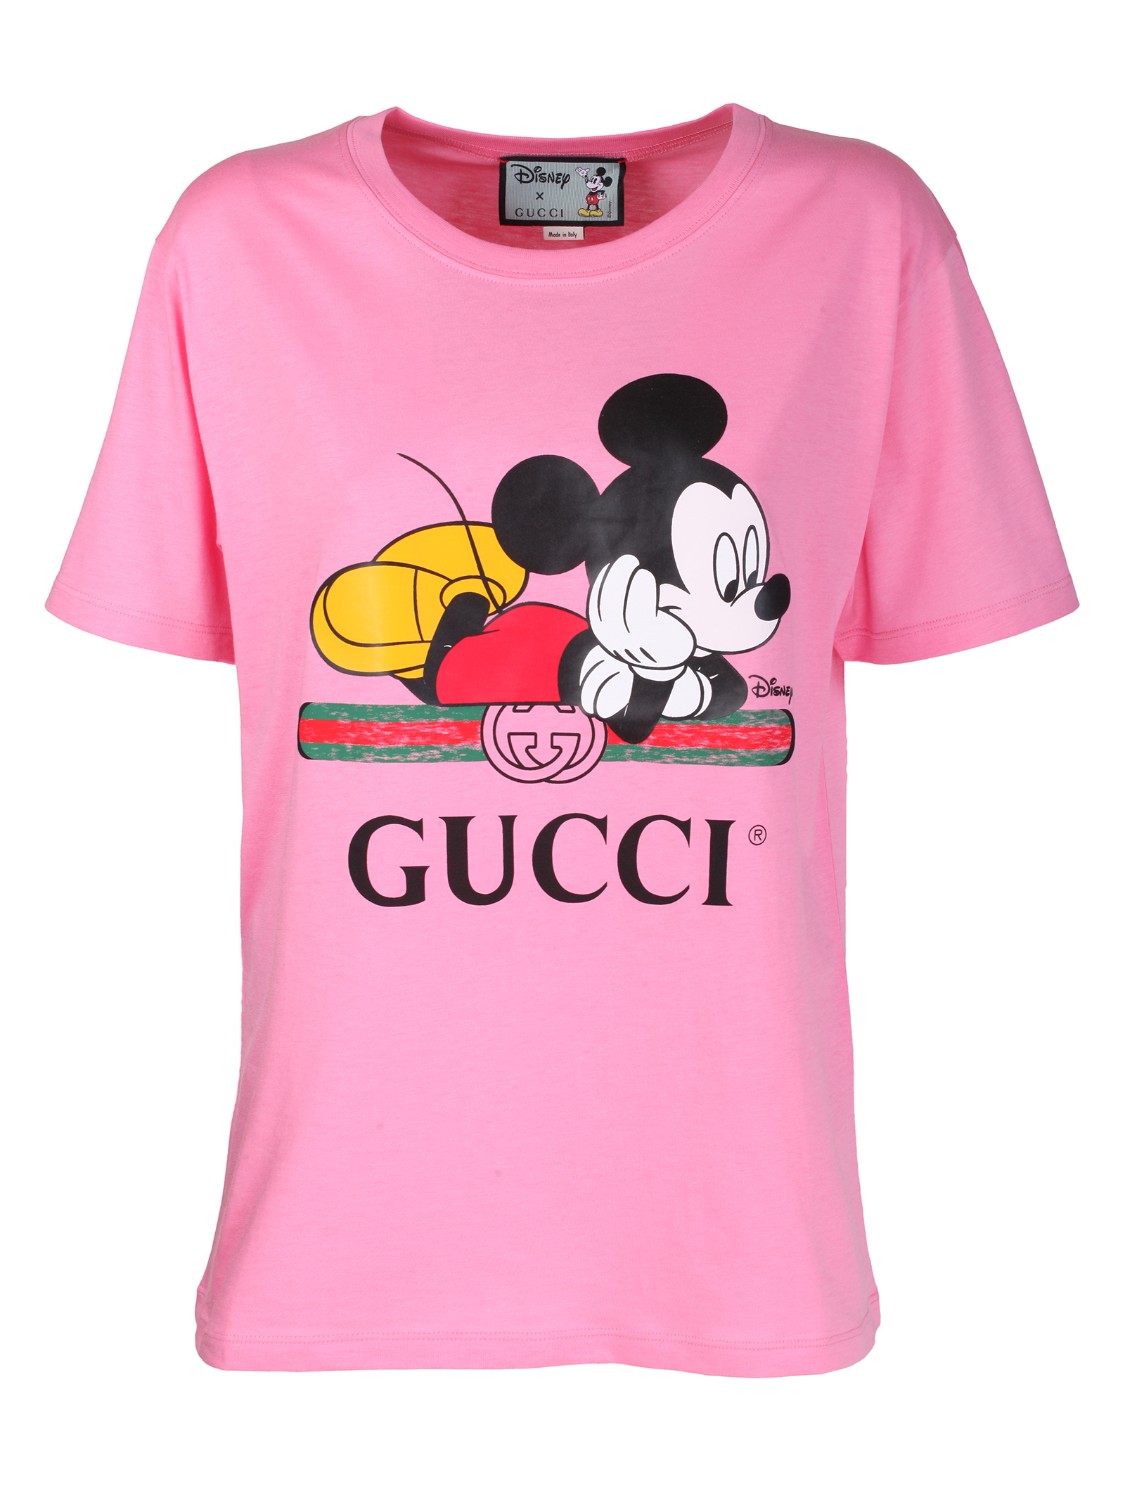 shop GUCCI Saldi T-shirt: Gucci t-shirt oversize Disney x Gucci
Girocollo.
Maniche corte.
Jersey di cotone biologico.
Vestibilità over.
Composizione: 100% cotone.
Made in Italy.. 492347 XJB7W-5412 number 1721971